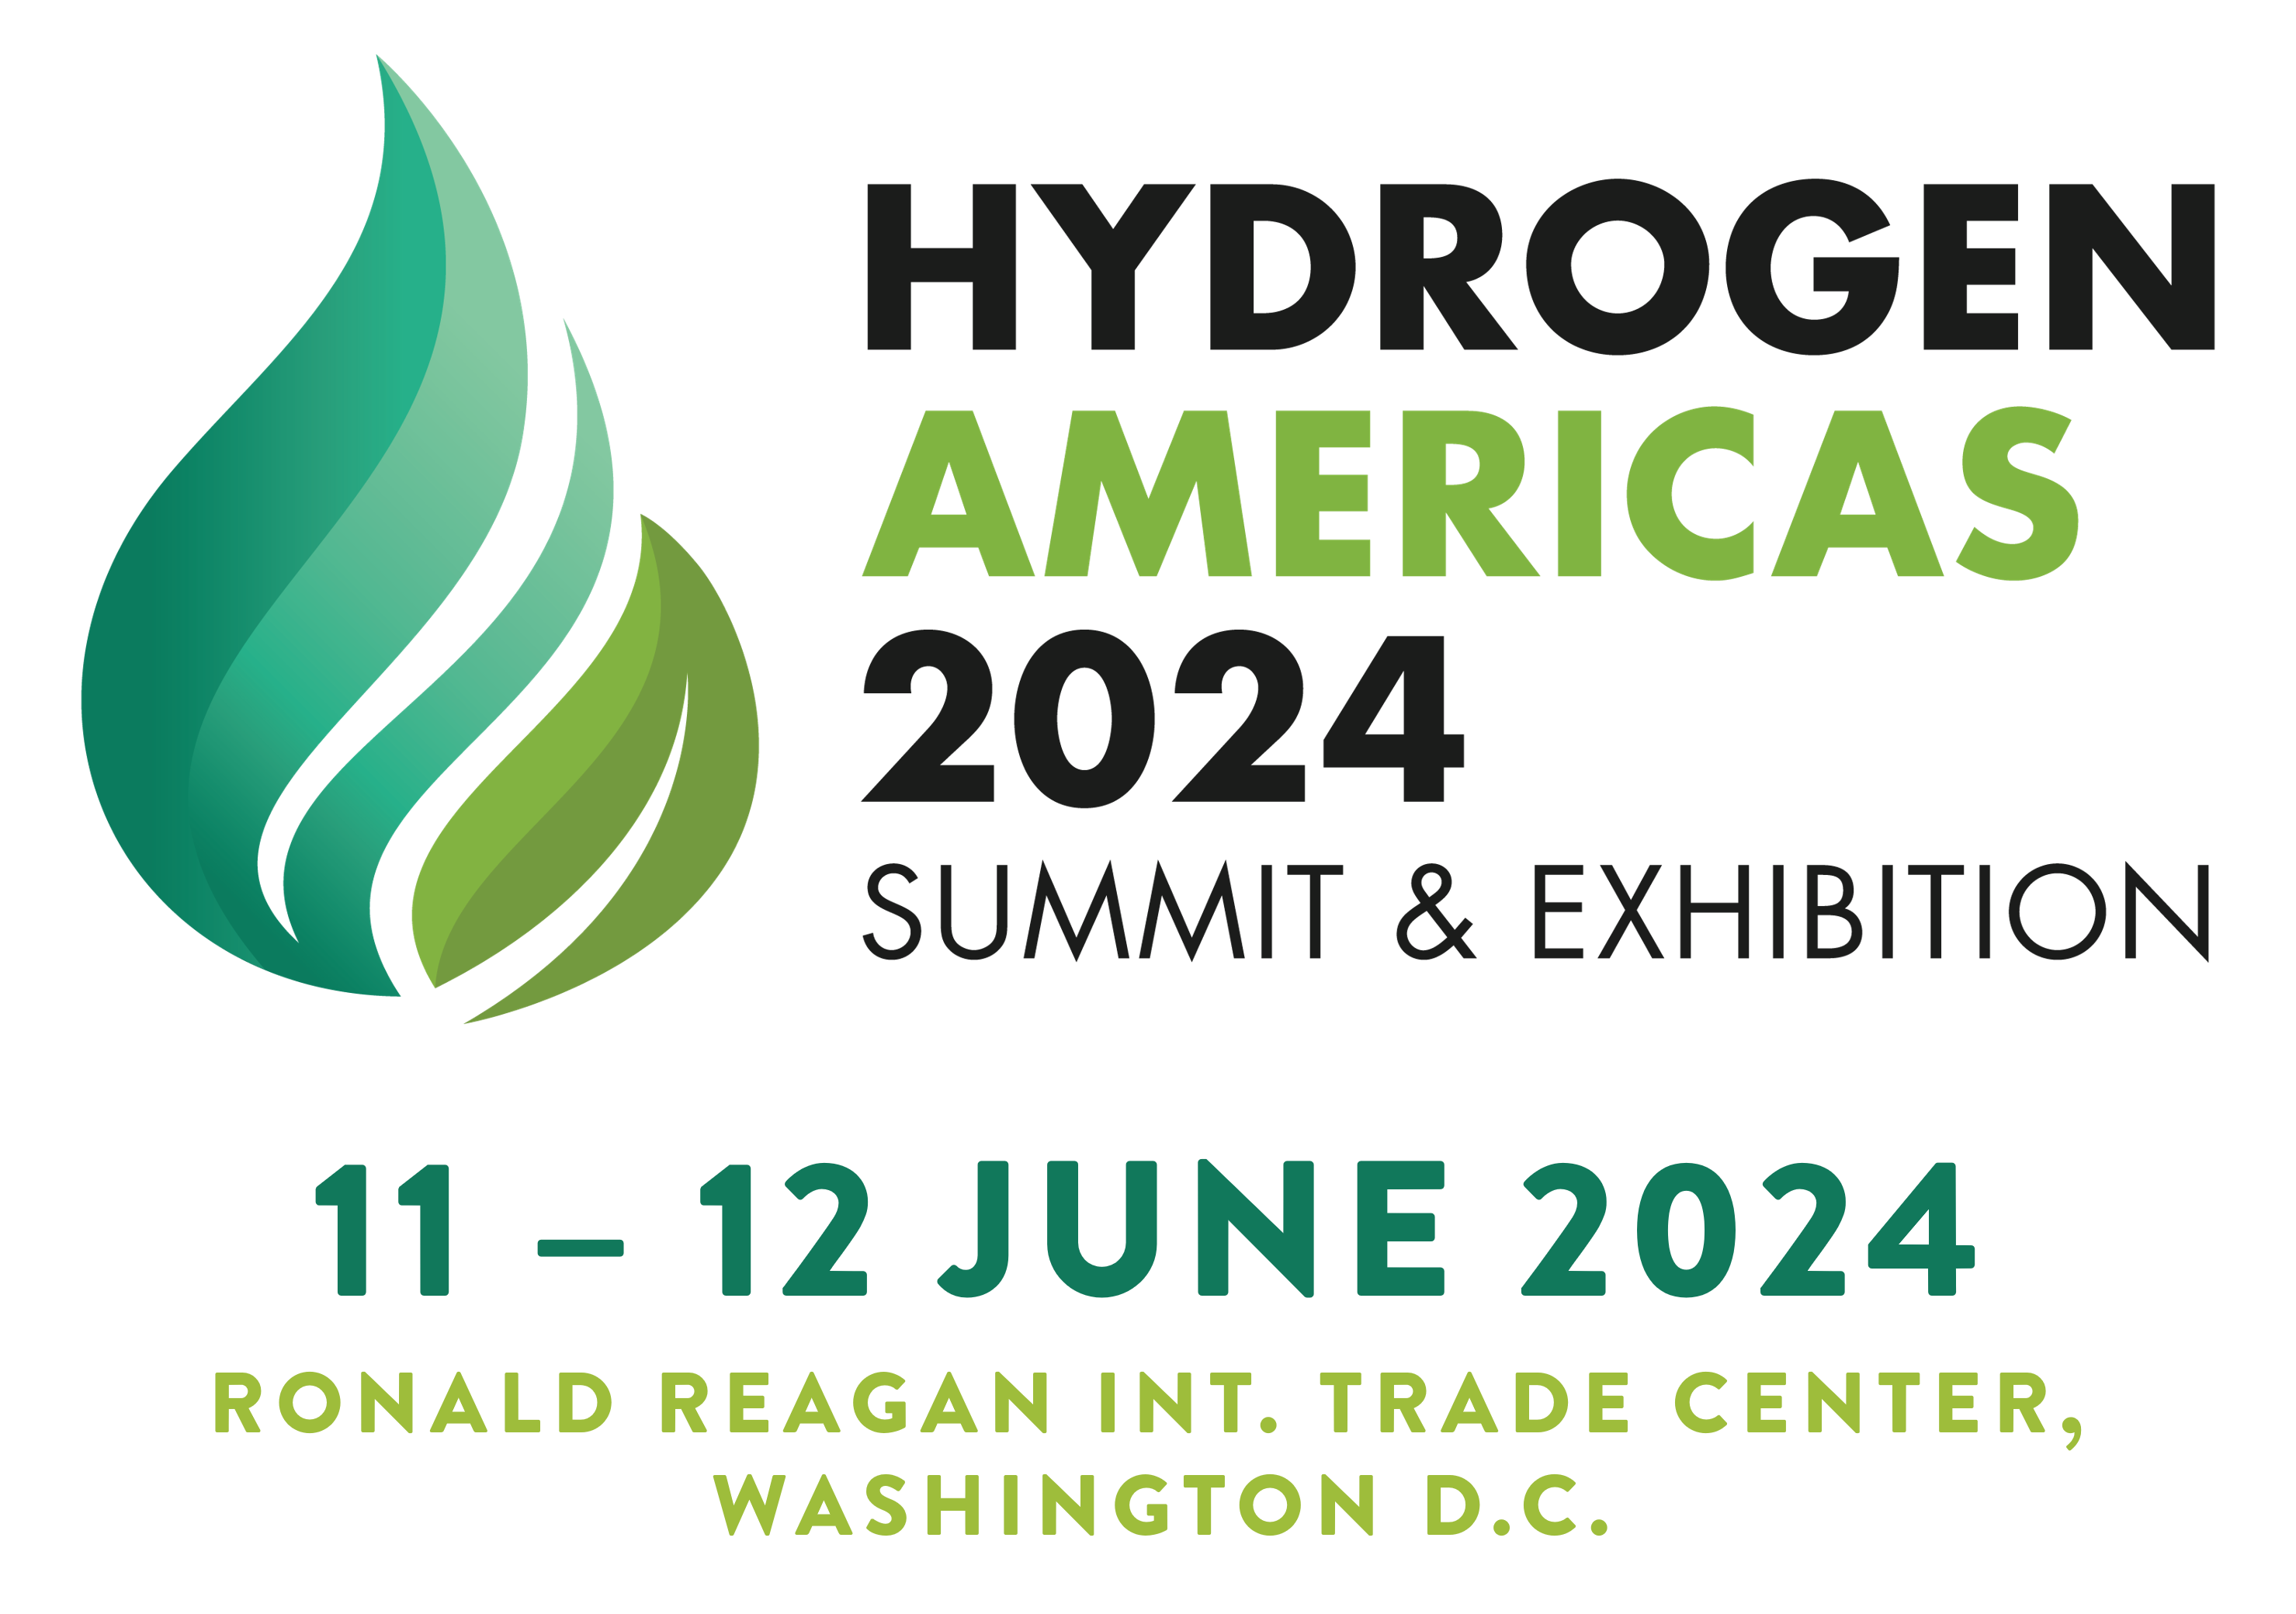 Hydrogen Americas Summit